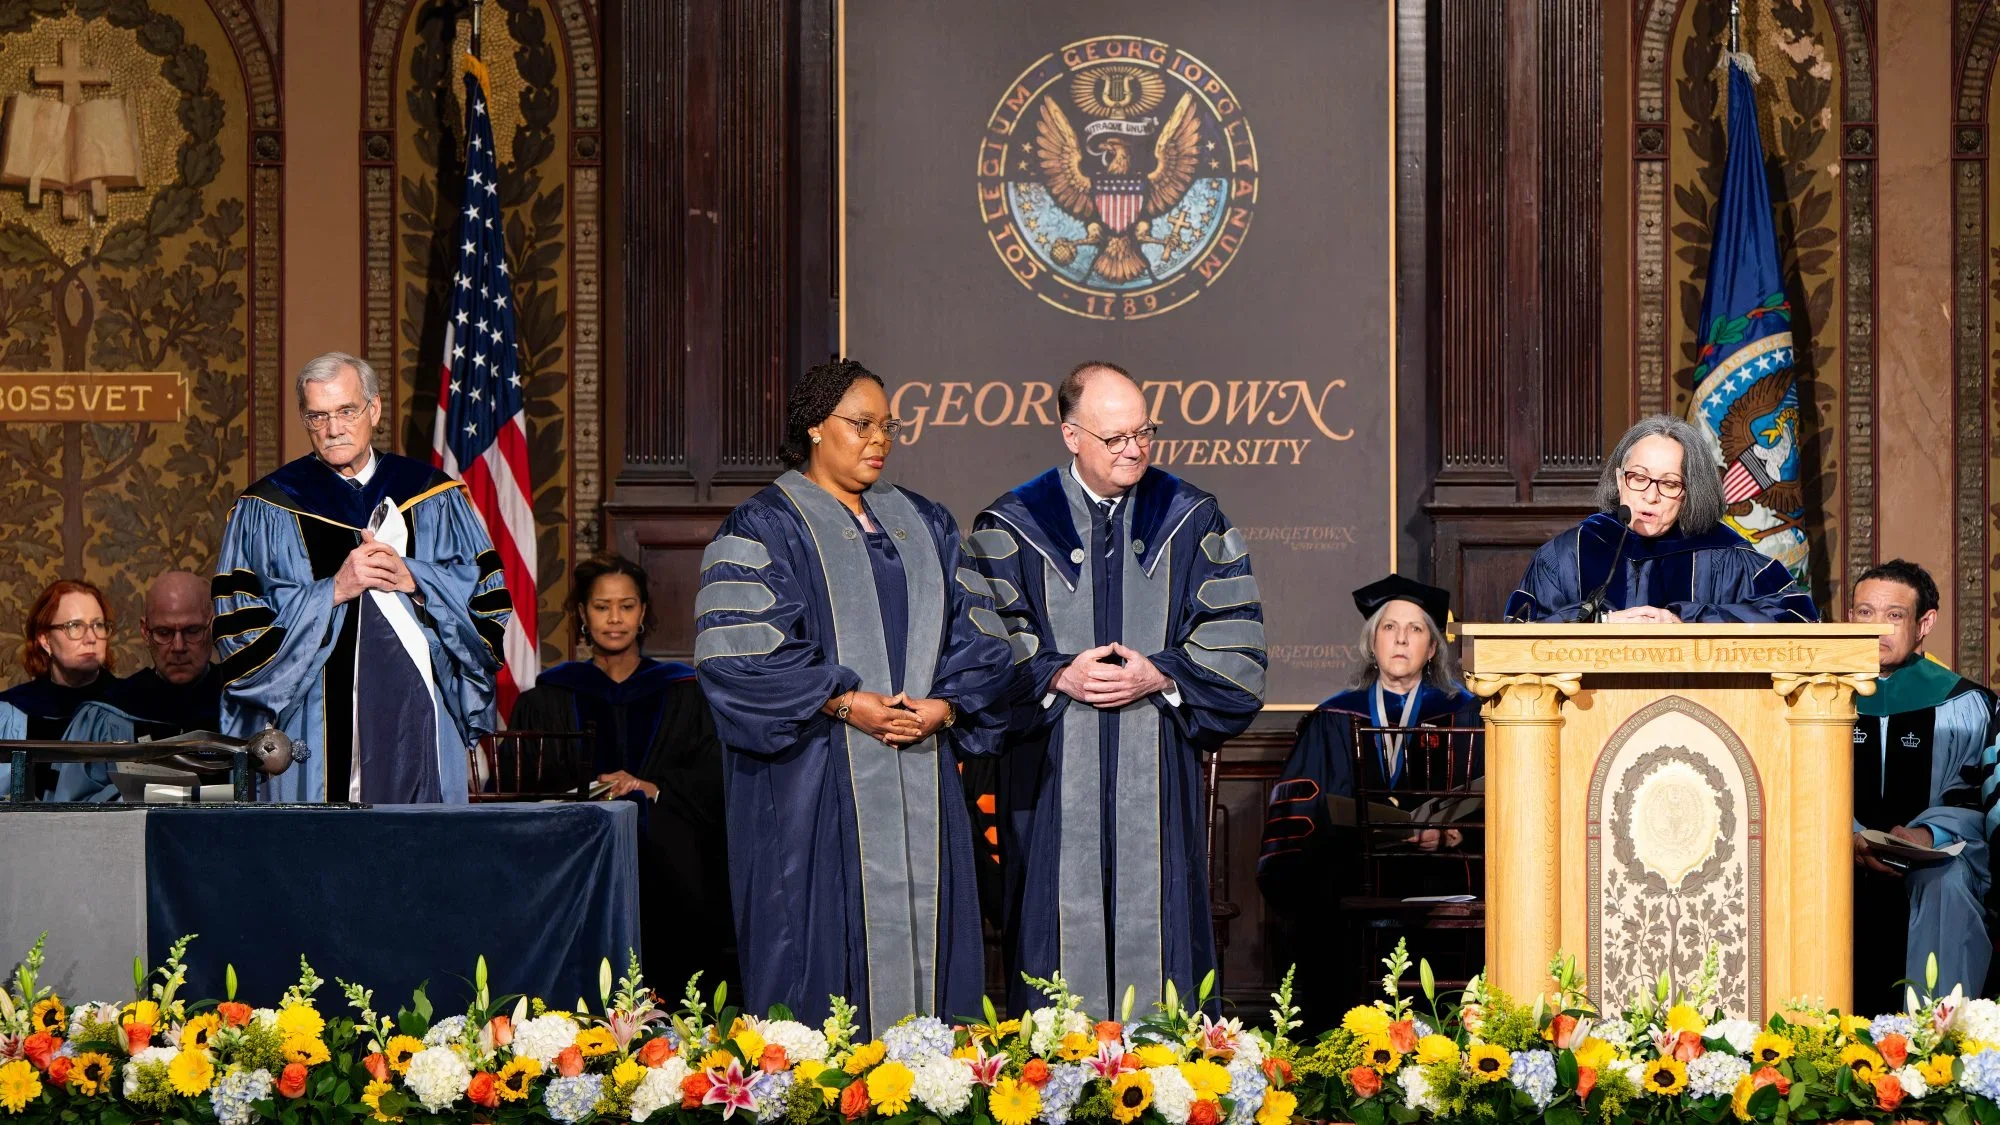 Georgetown leaders presenting a degree